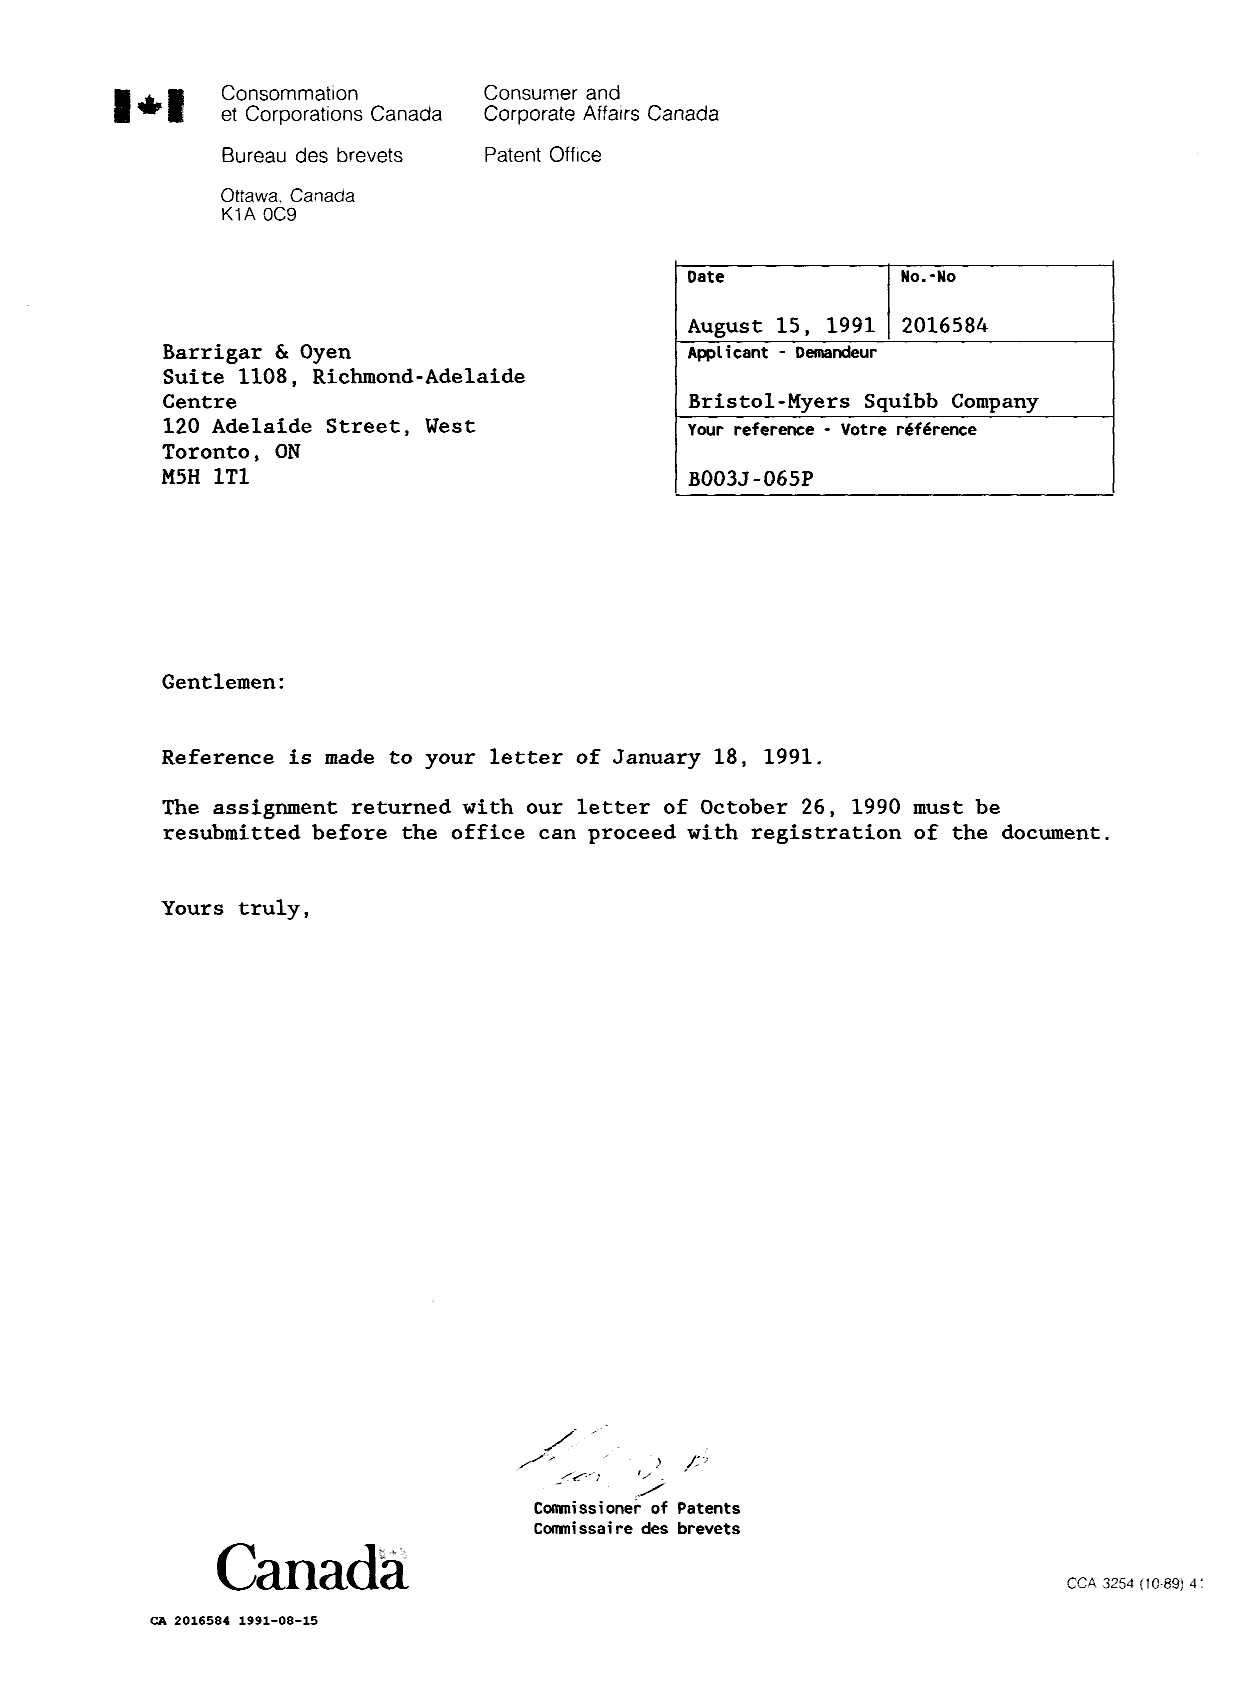 Document de brevet canadien 2016584. Lettre du bureau 19910815. Image 1 de 1